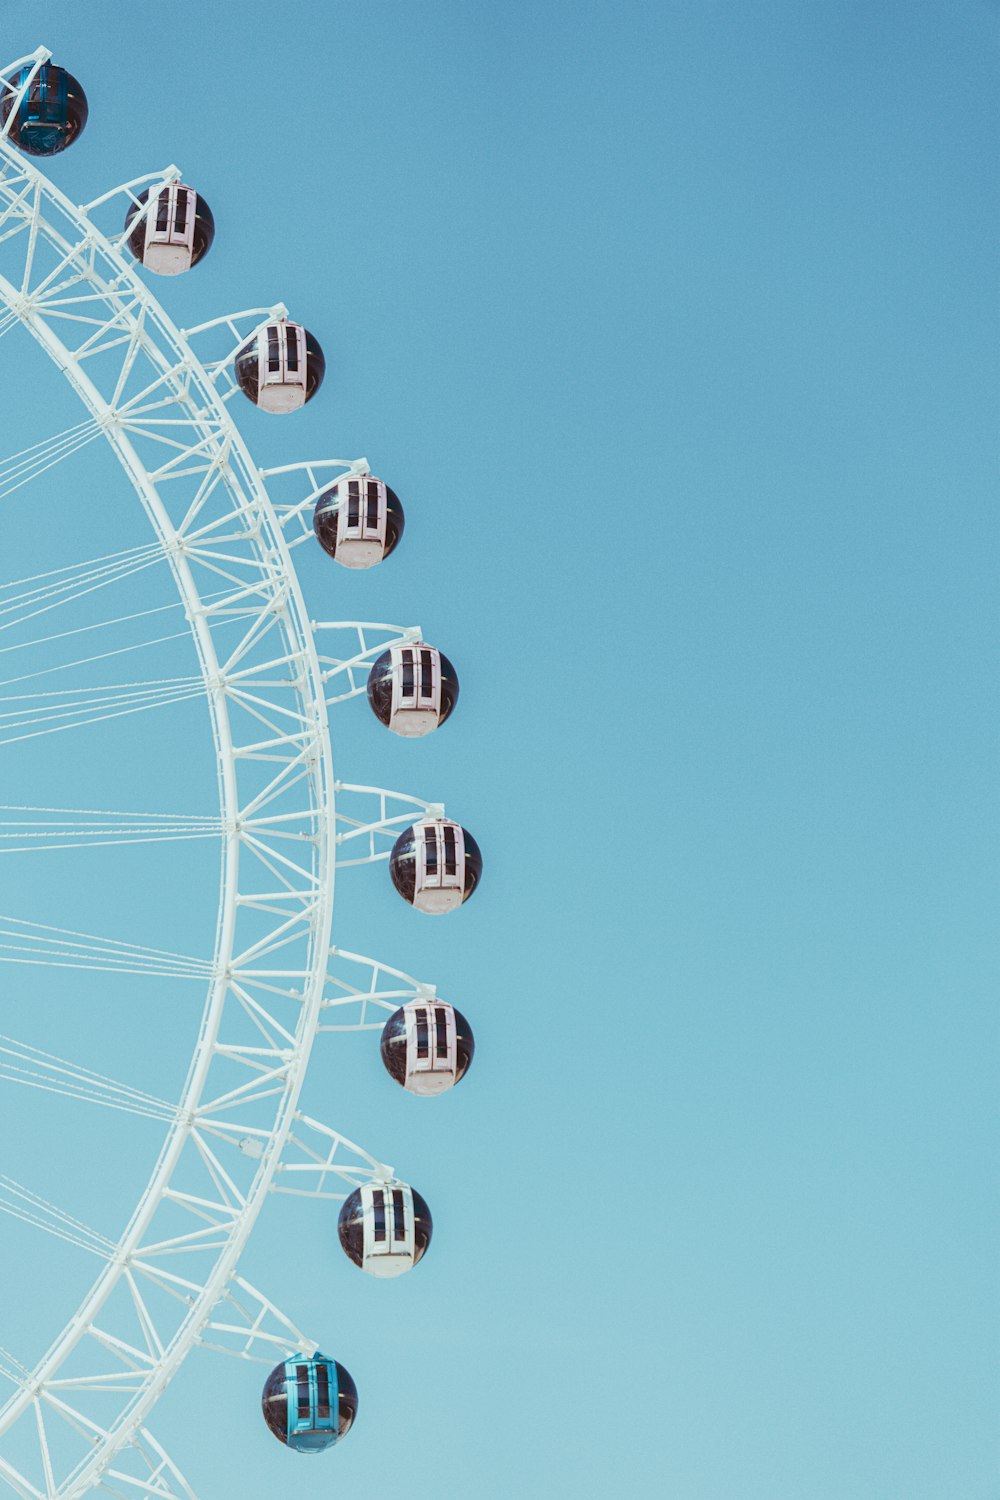 uma roda gigante é mostrada contra um céu azul